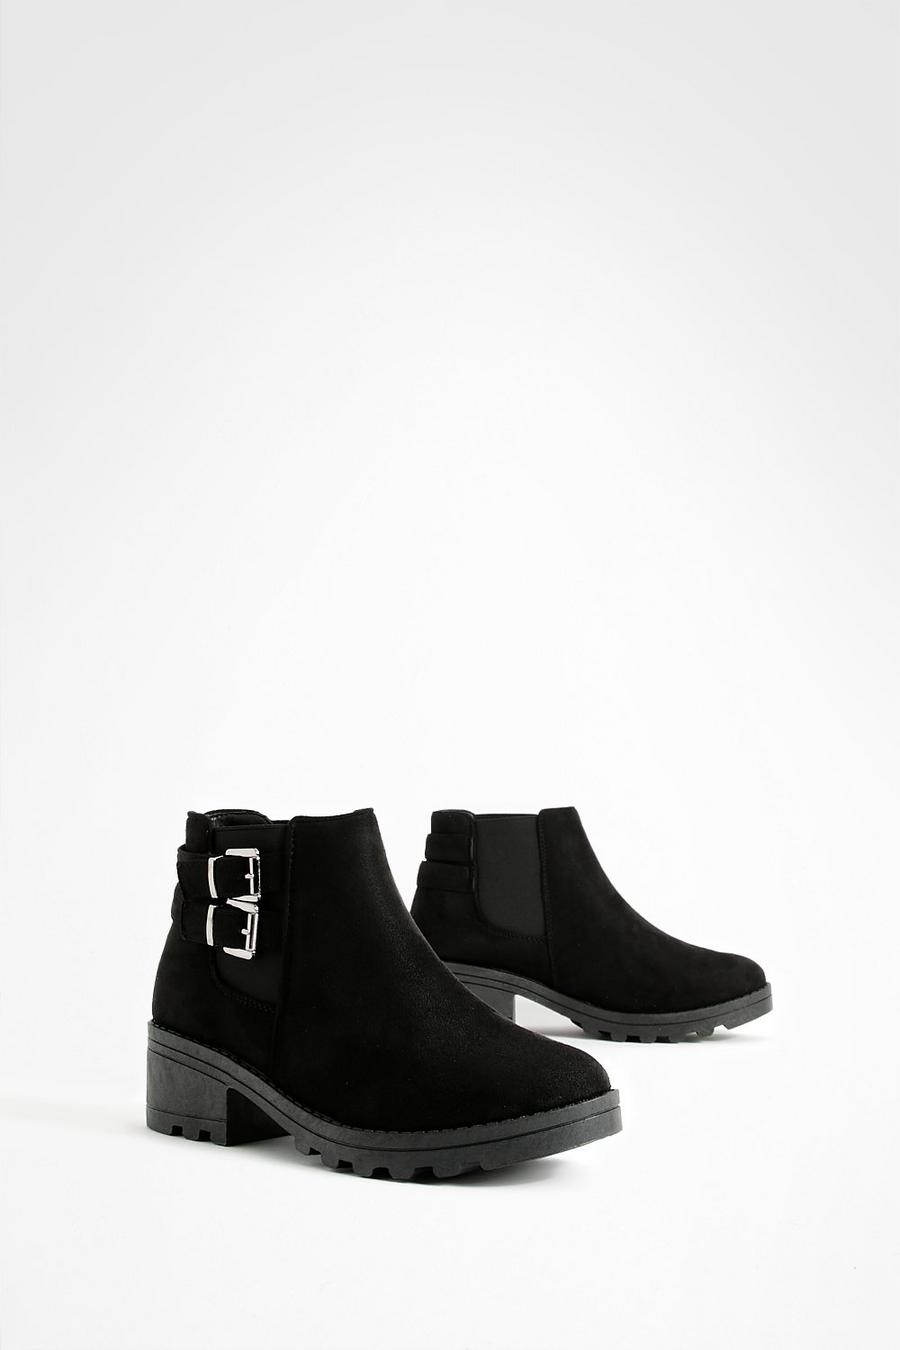 Chelsea-Stiefel mit Blockabsatz und Schnallen, Schwarz black